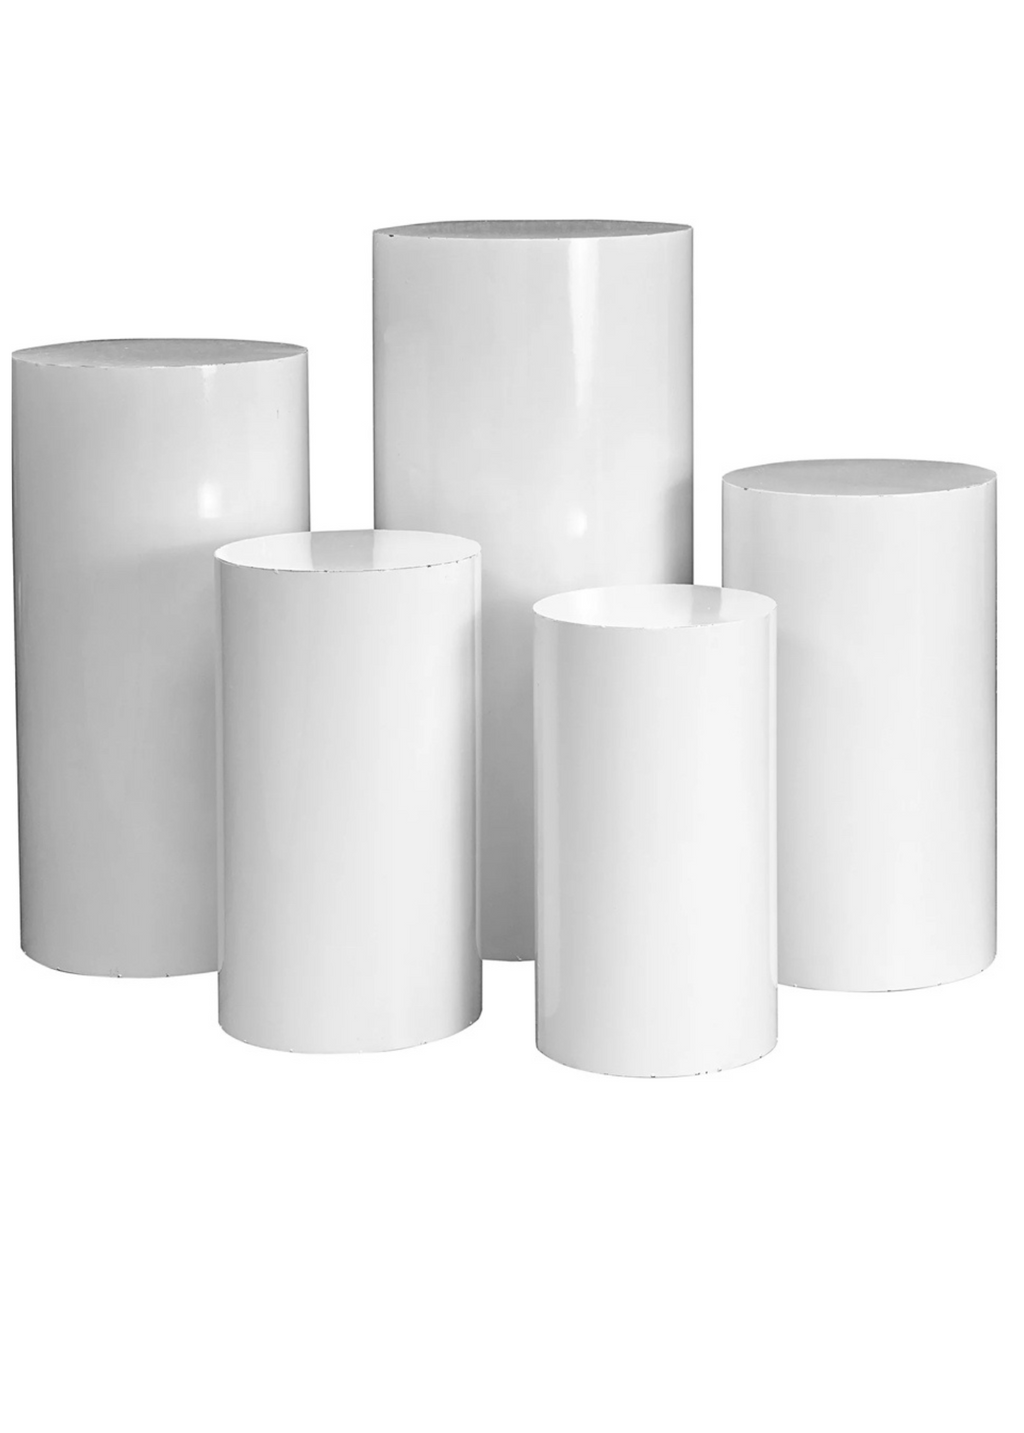 White Cylinder Pedestals